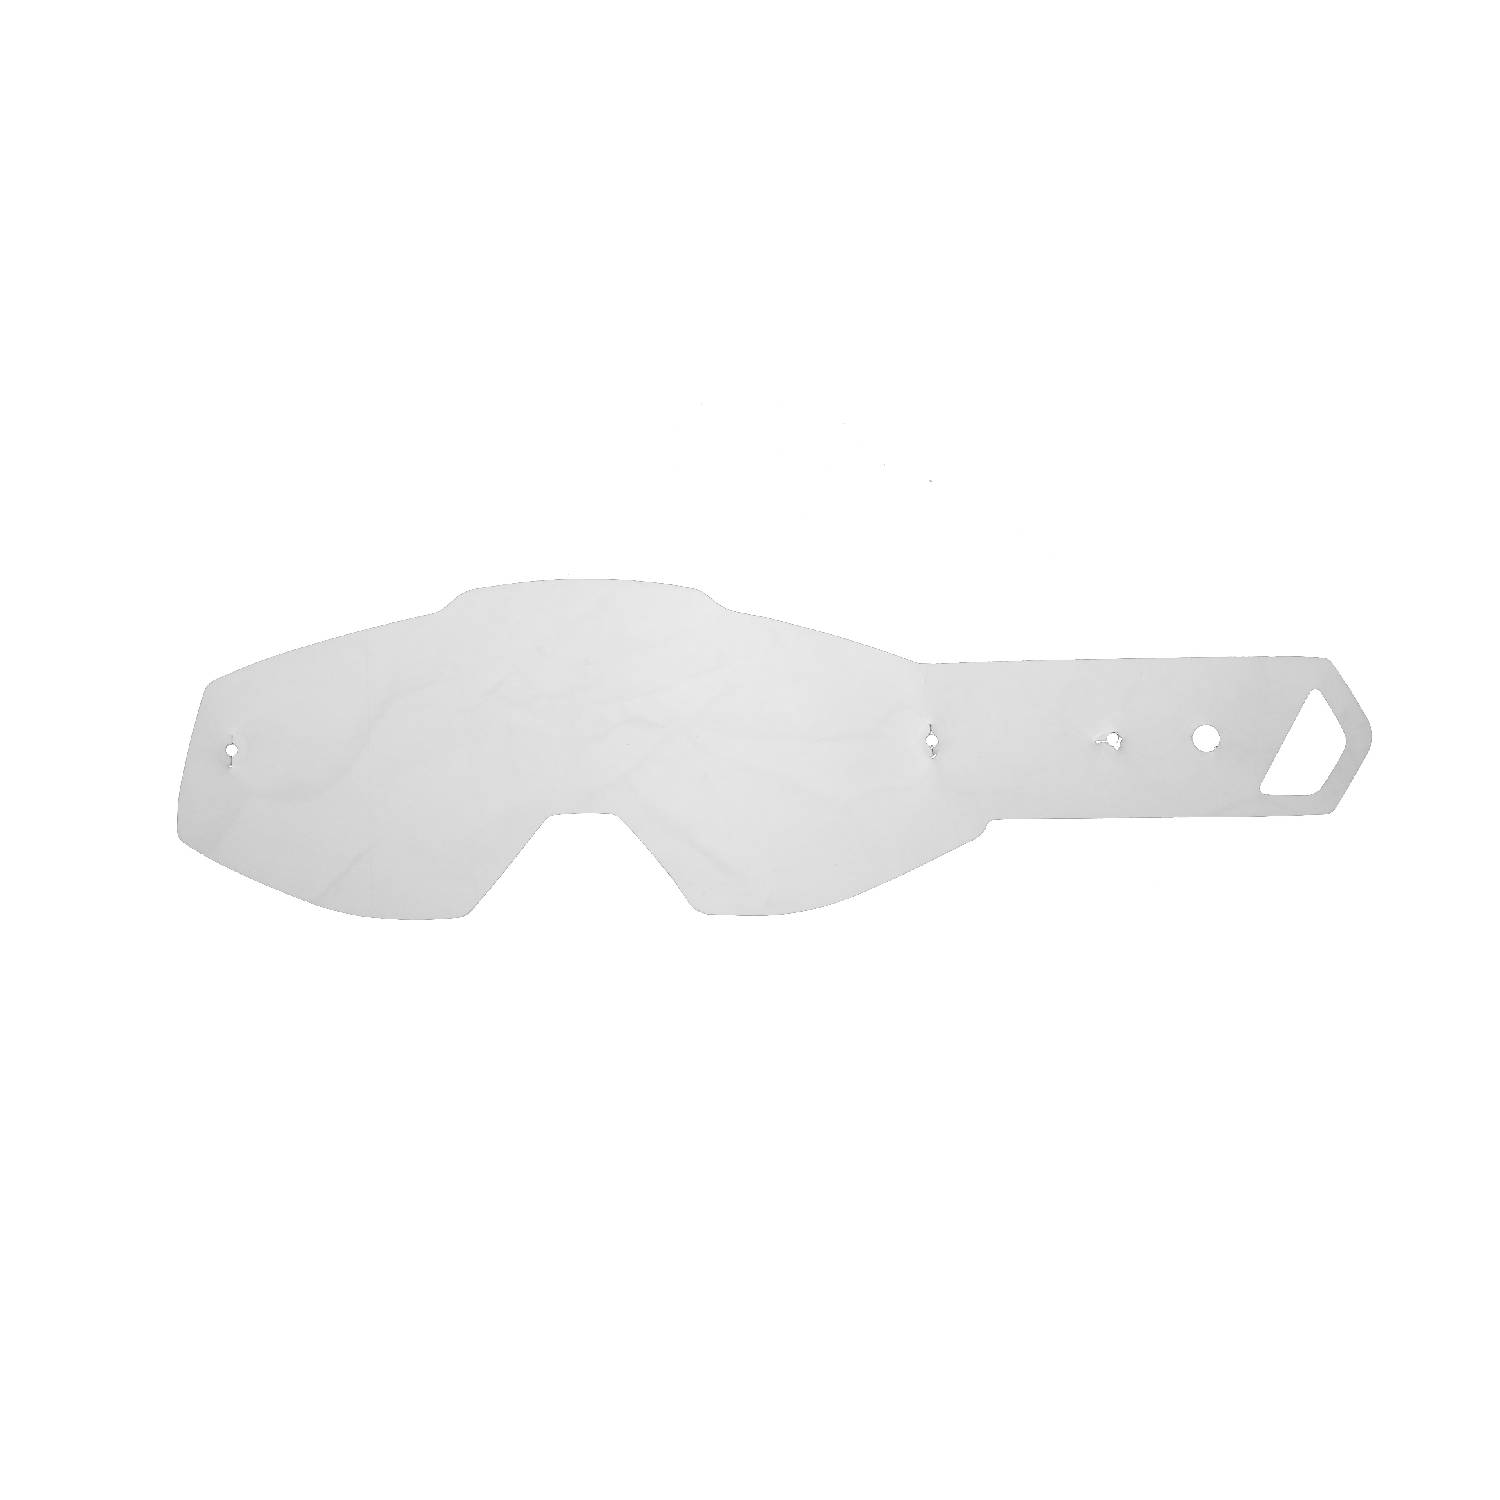 Lenti a strappo compatibili per occhiale/maschera 100% Racecraft / Strata / Accuri / Mercury / Strata Plus / Accuri Plus kit 50 pz